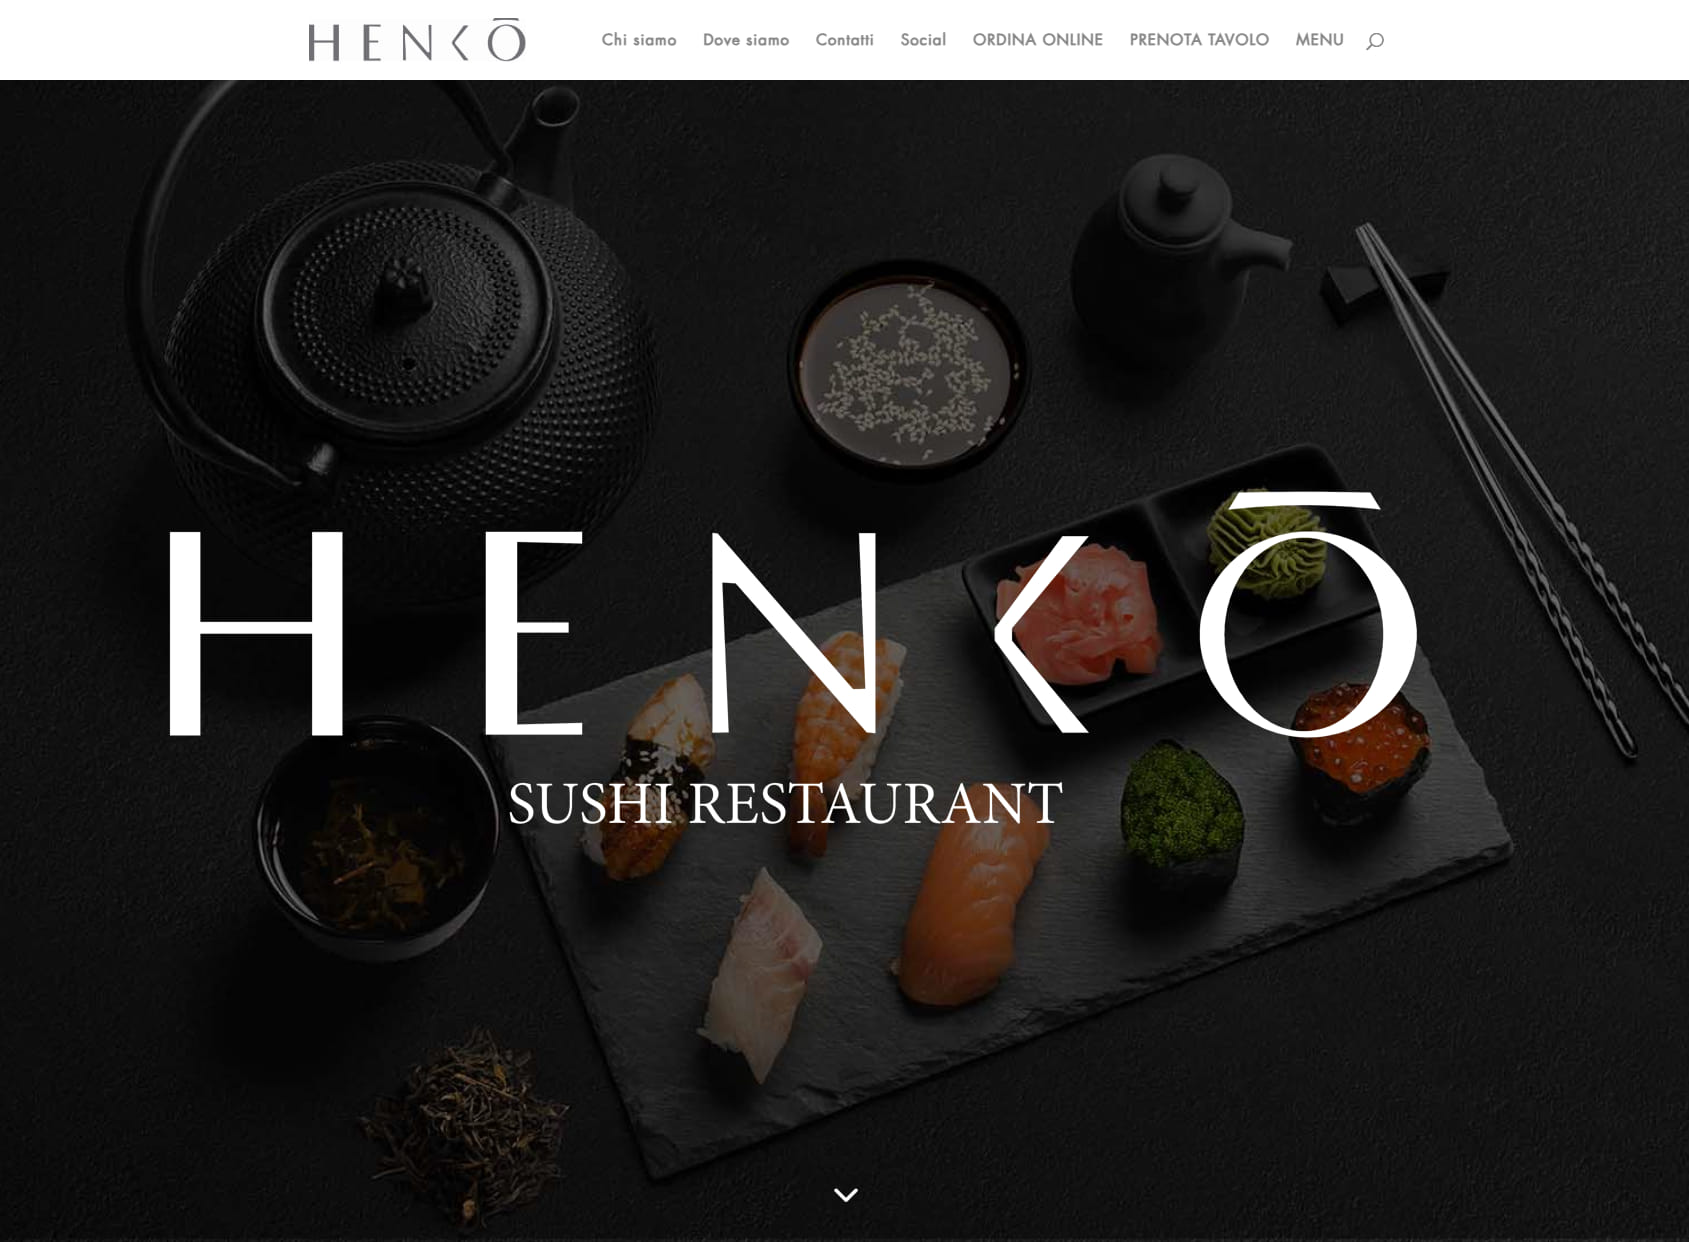 Henkō Sushi Restaurant